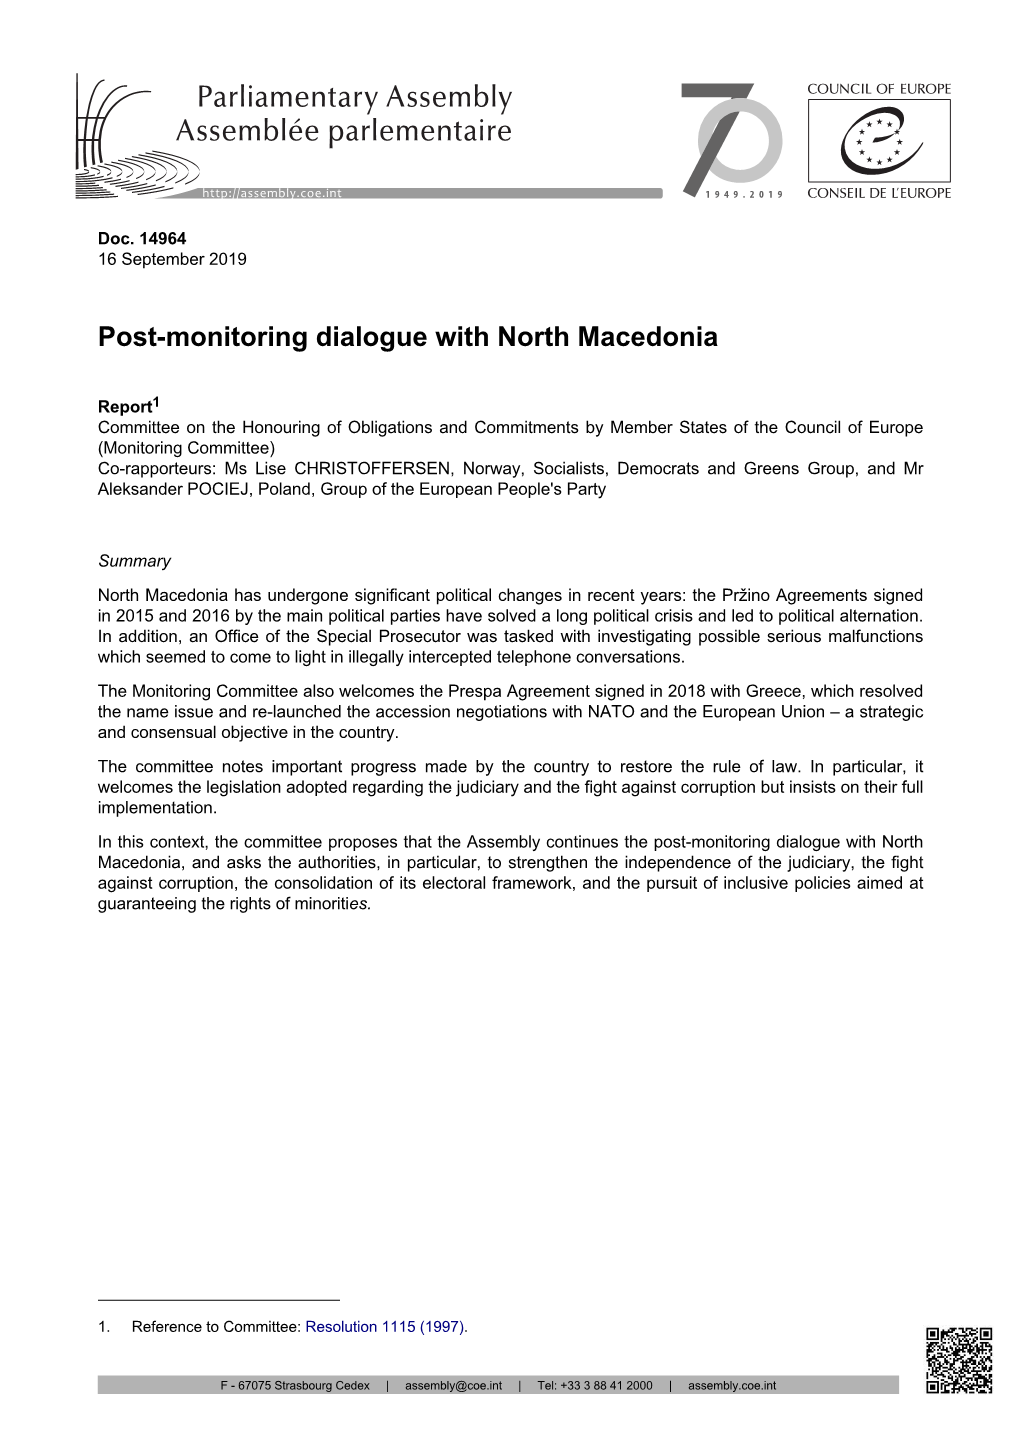 Post-Monitoring Dialogue with North Macedonia